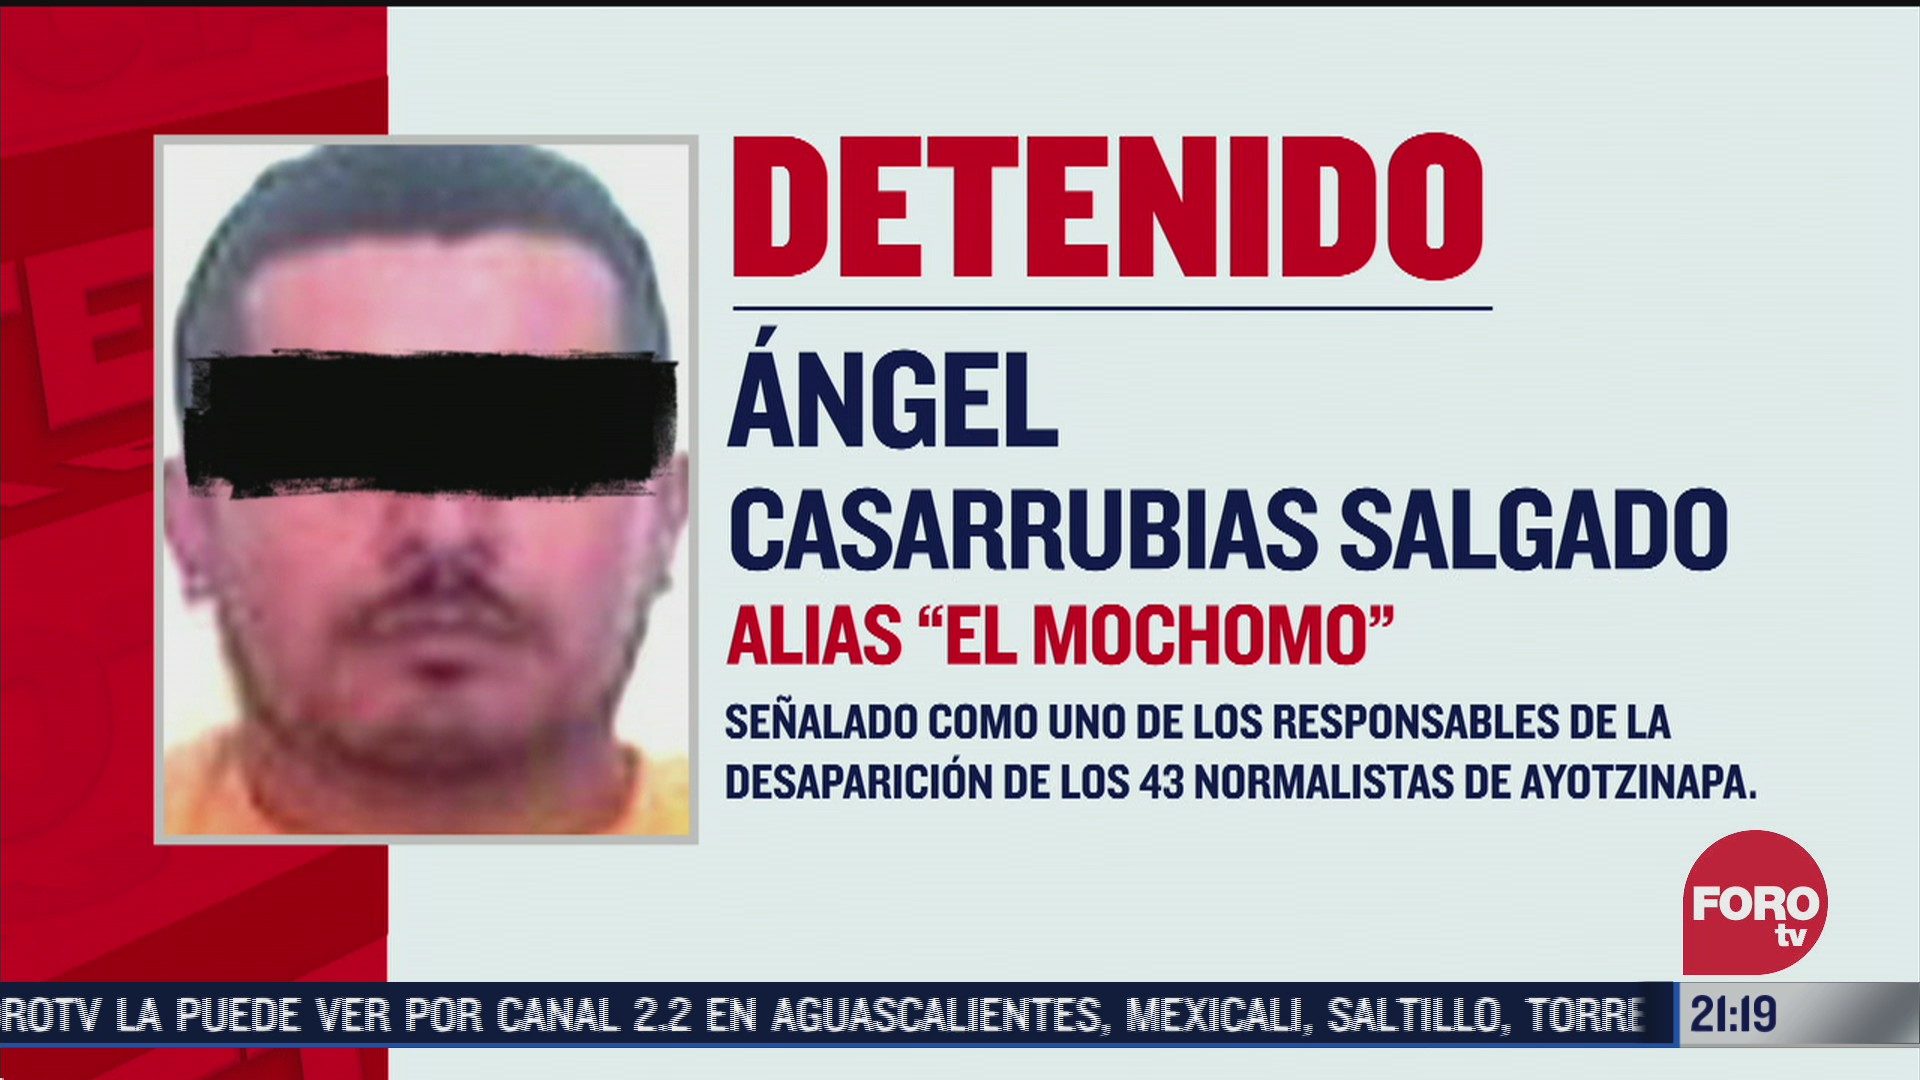 El Mochomo implicado en caso Ayotzinapa